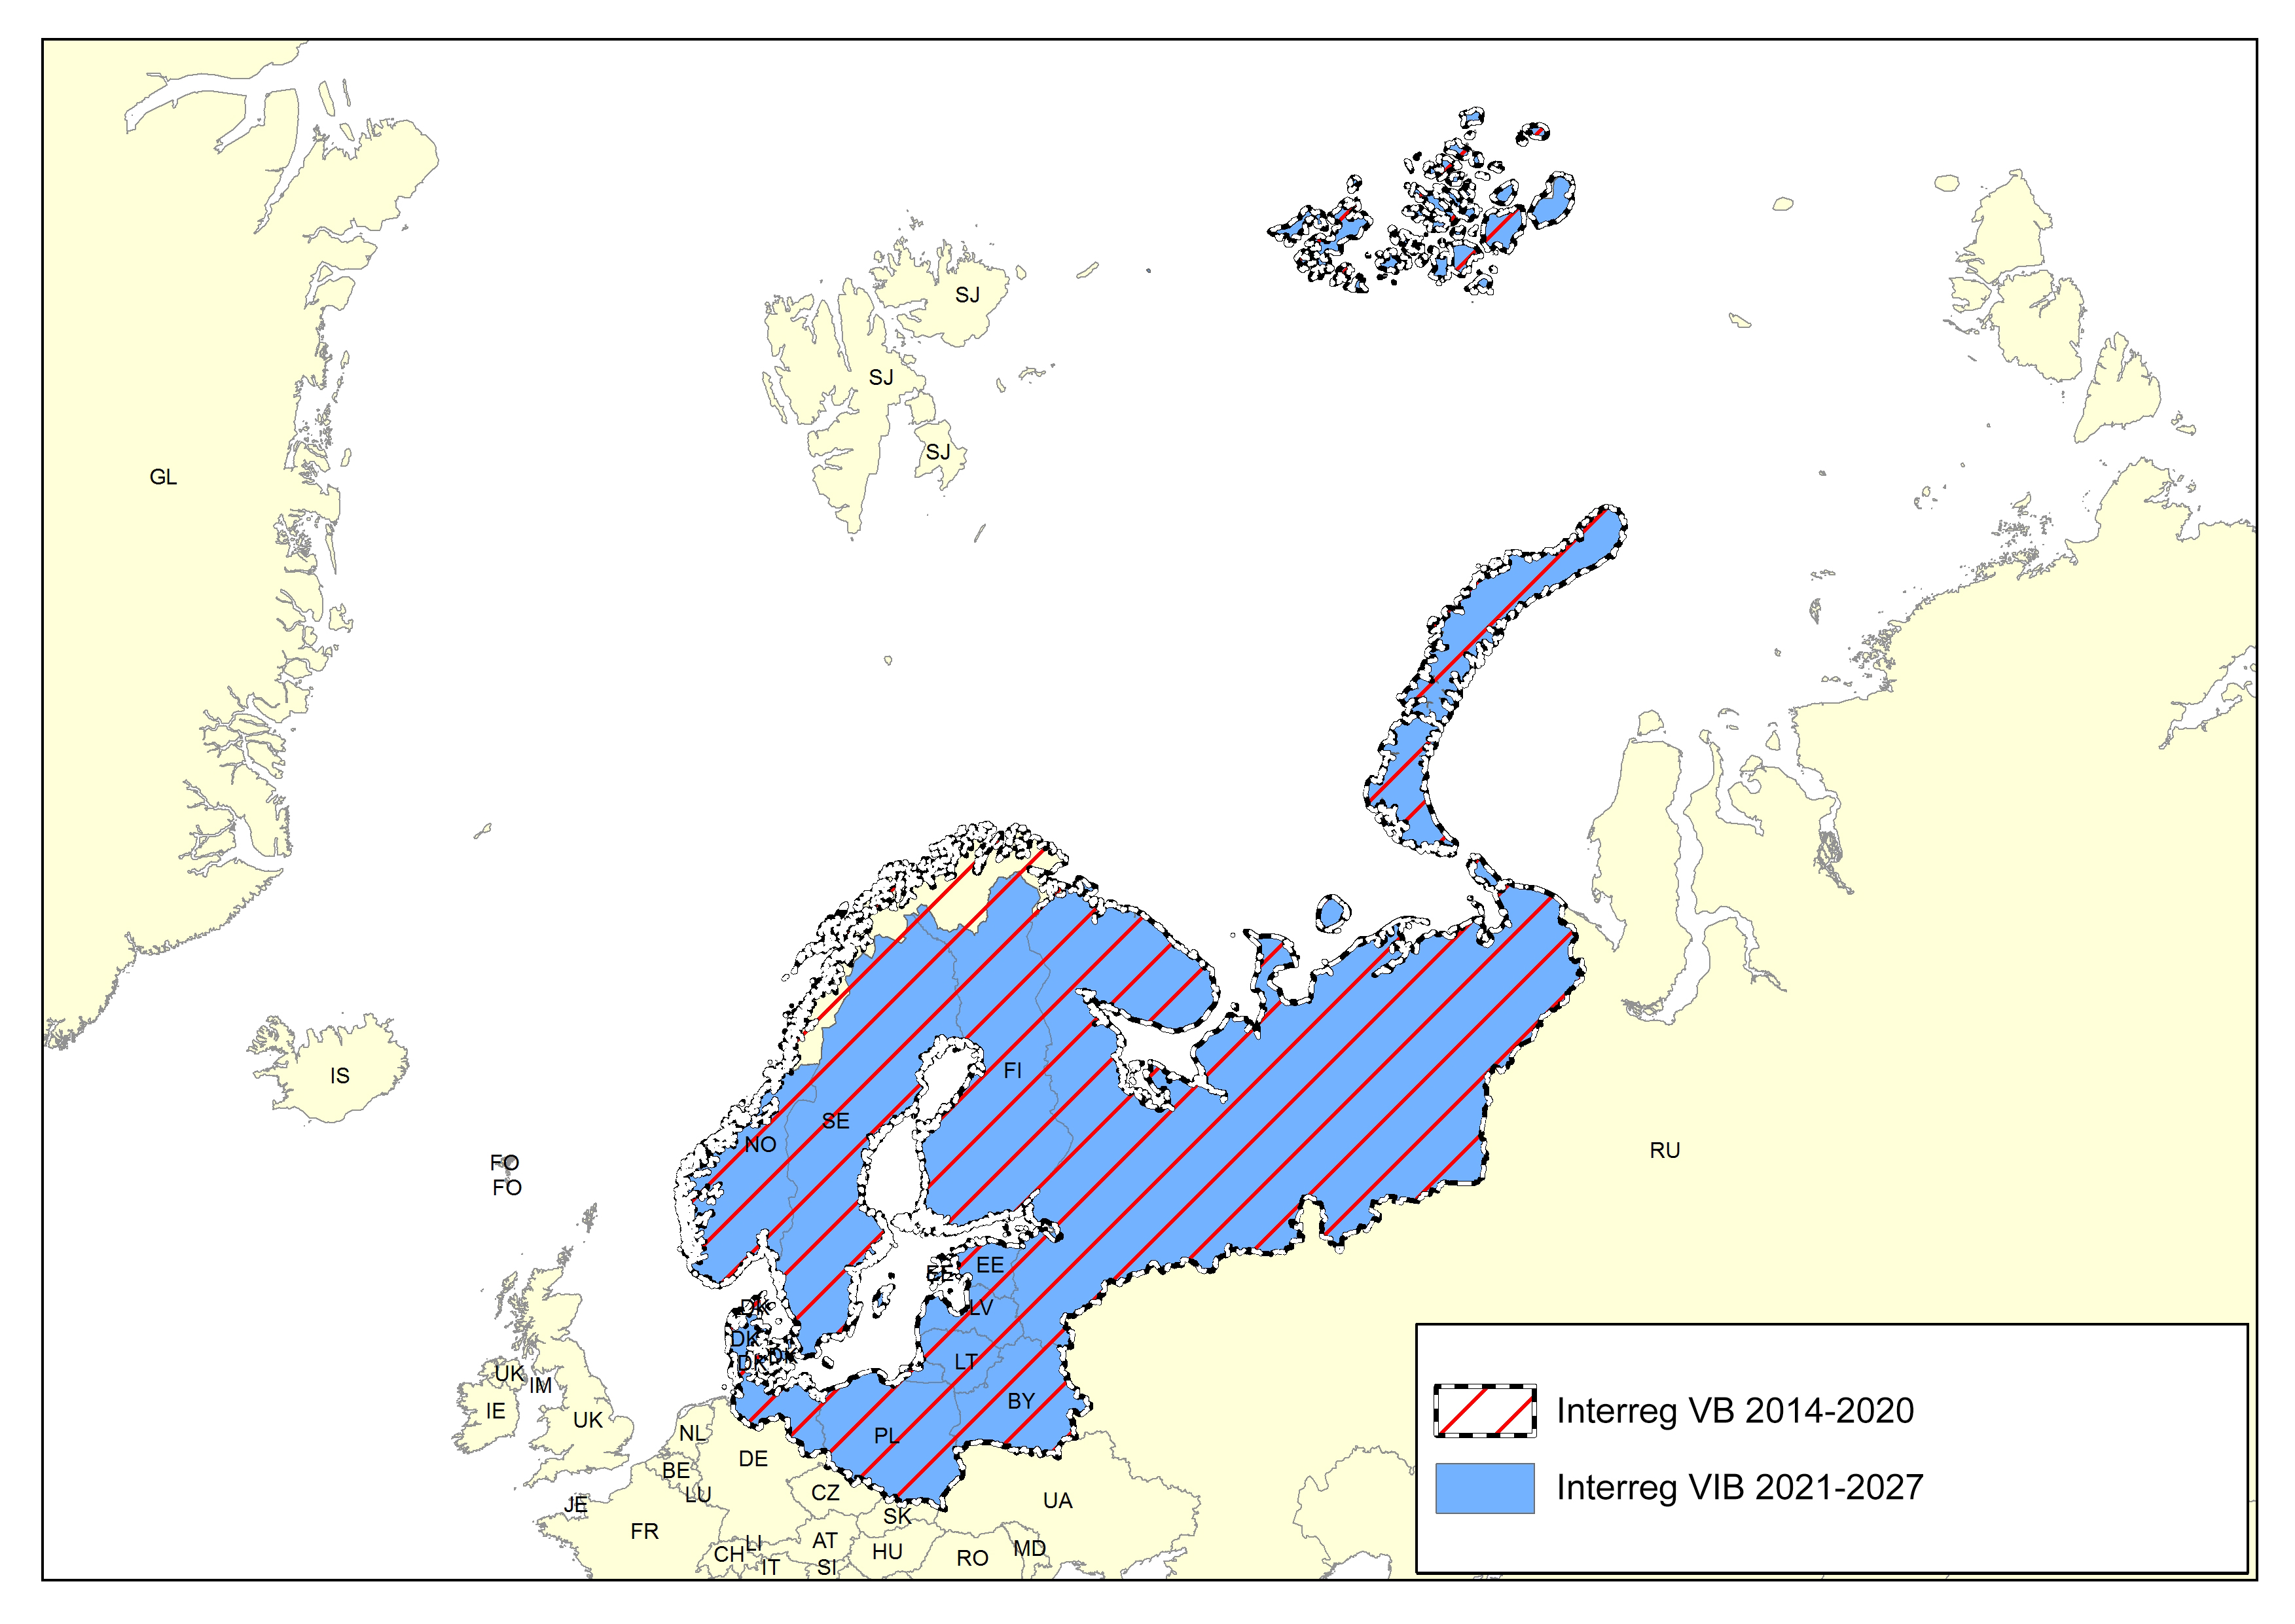 Baltic Sea comparison map